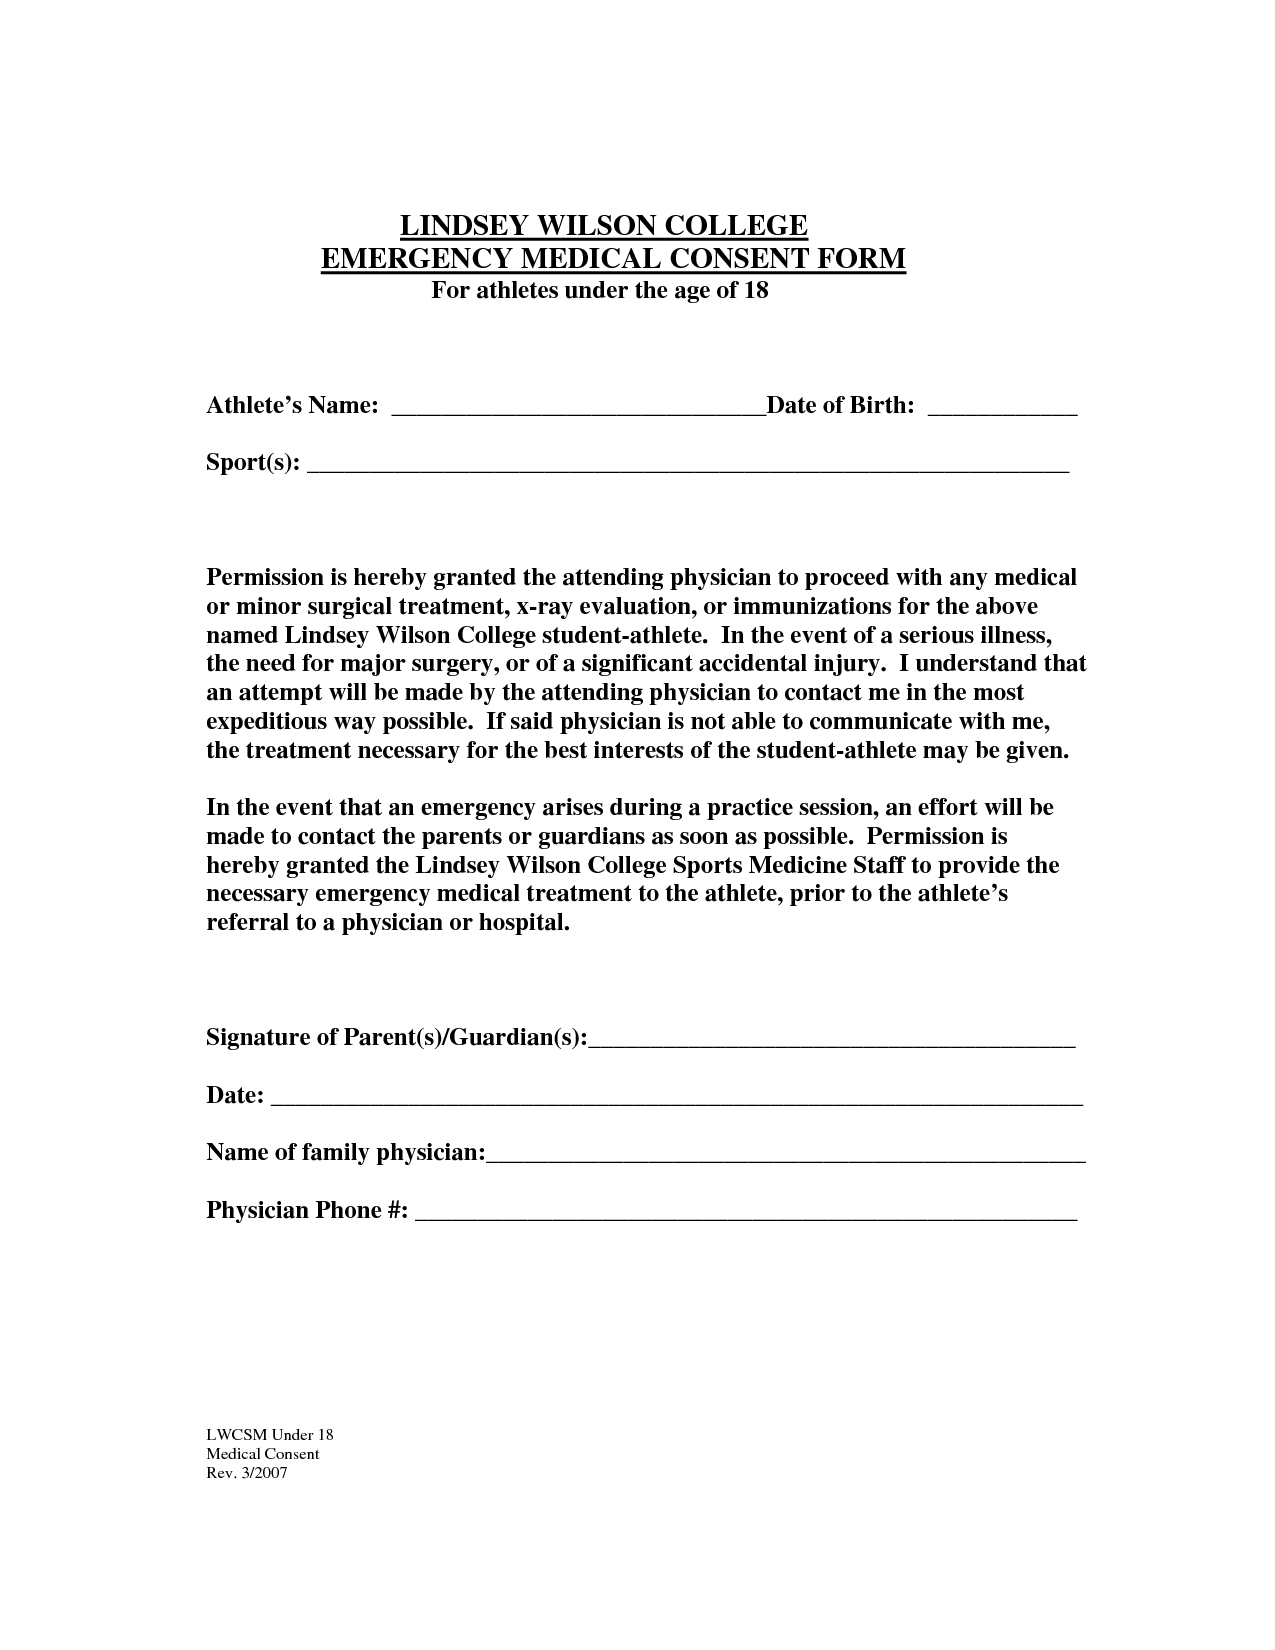 st. george shuttle parent consent form